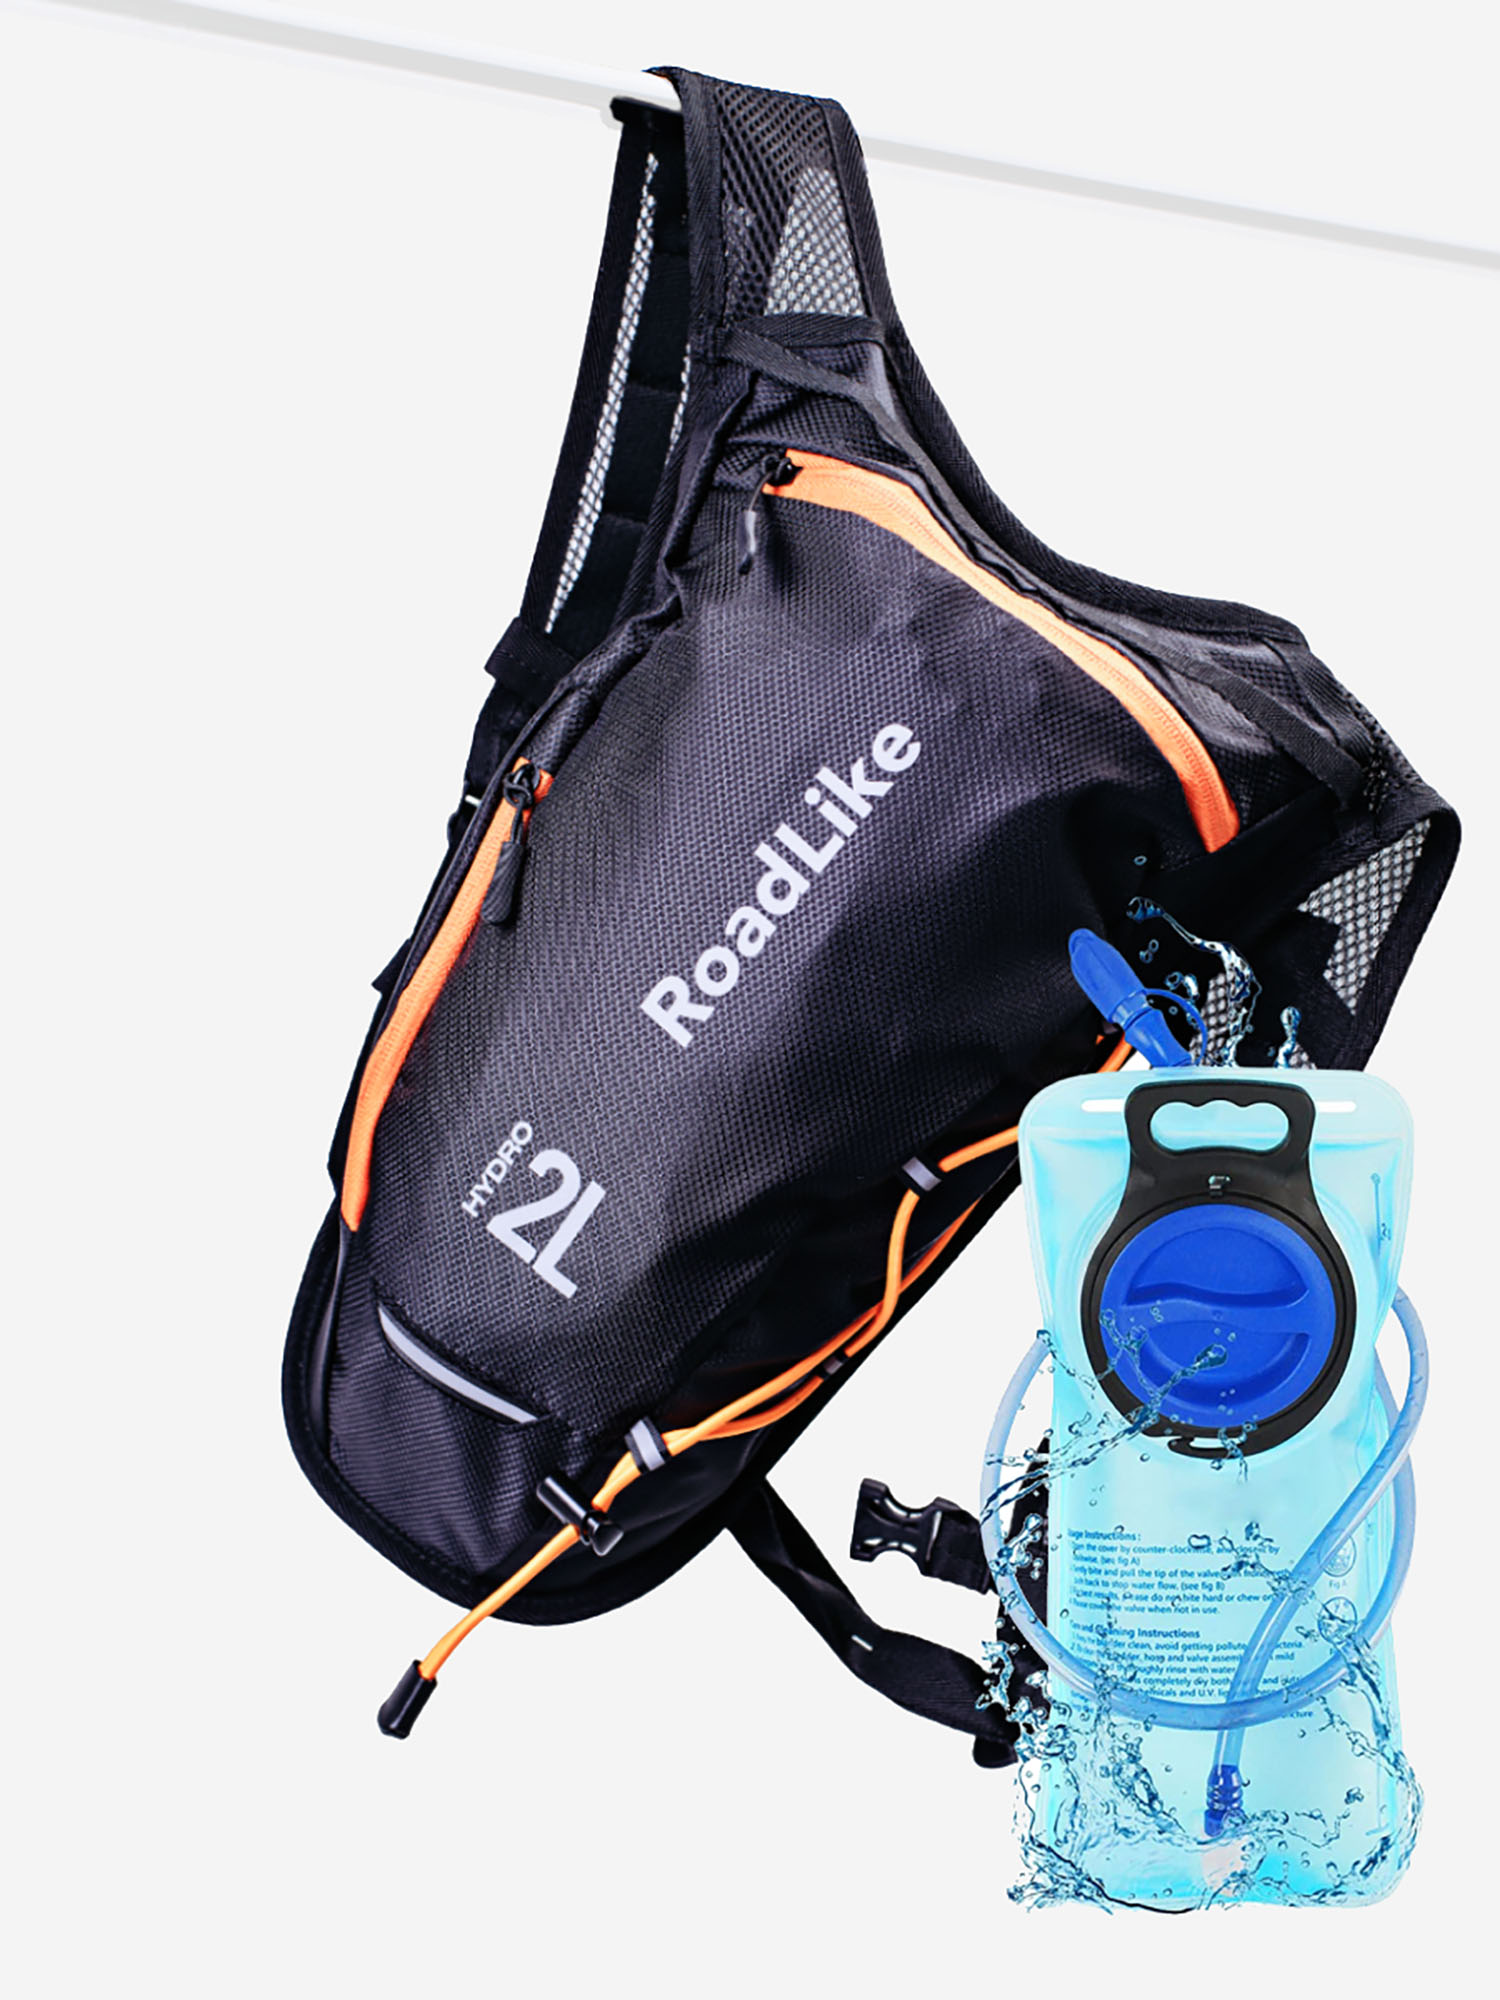 Рюкзак с гидросистемой RoadLike Hydro Sport, черный, Черный рюкзак с гидратором